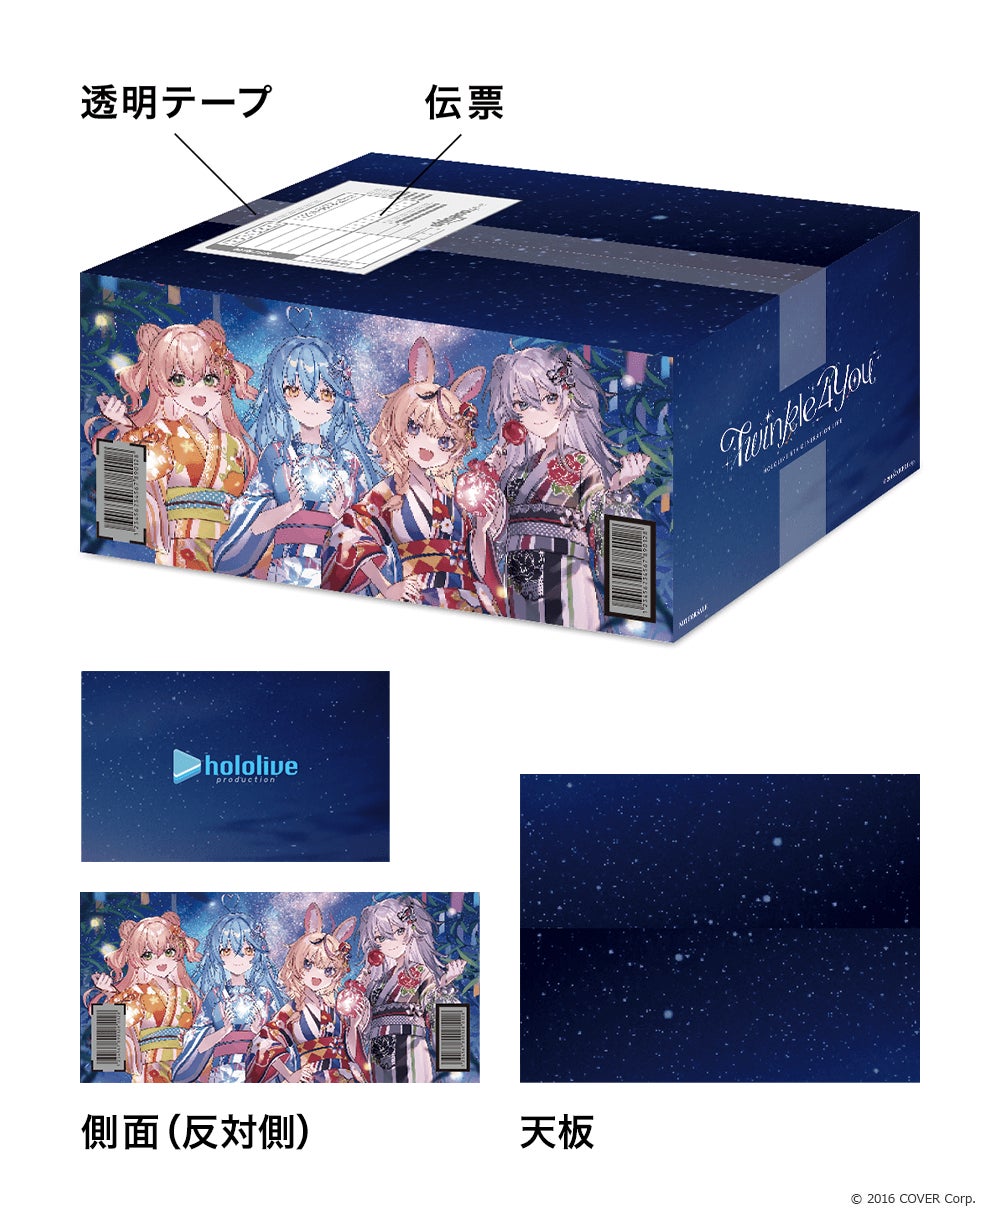 「楽天ブックス」、『hololive 5th Generation Live “Twinkle 4 You”』Blu-rayの限定オリジナル配送BOXデザインを公開